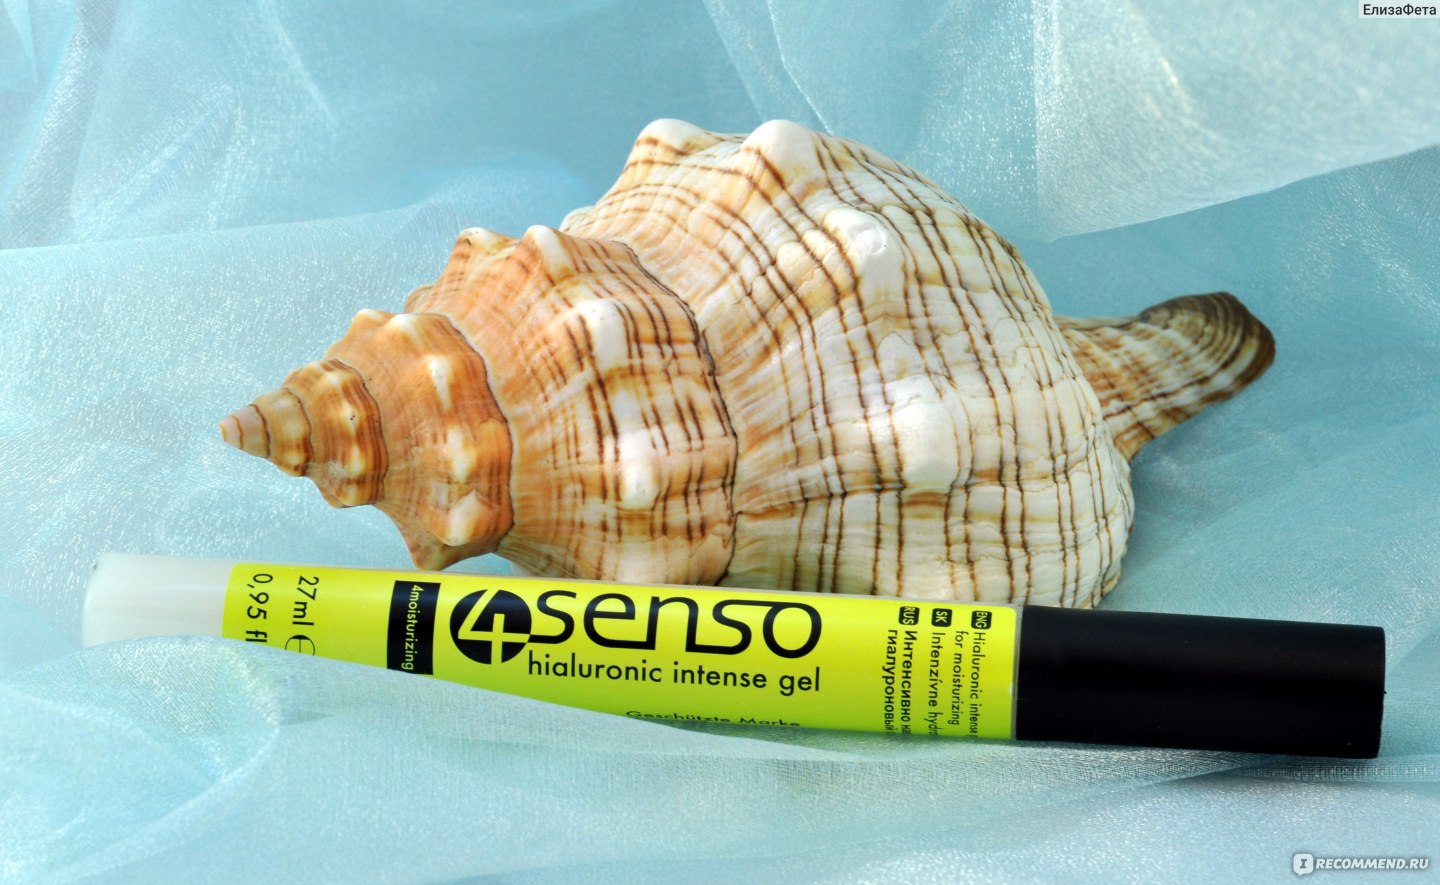 Интенсивно наводняющий гиалуроновый гель Beauty cosmetics 4senso hialuronic intense gel фото